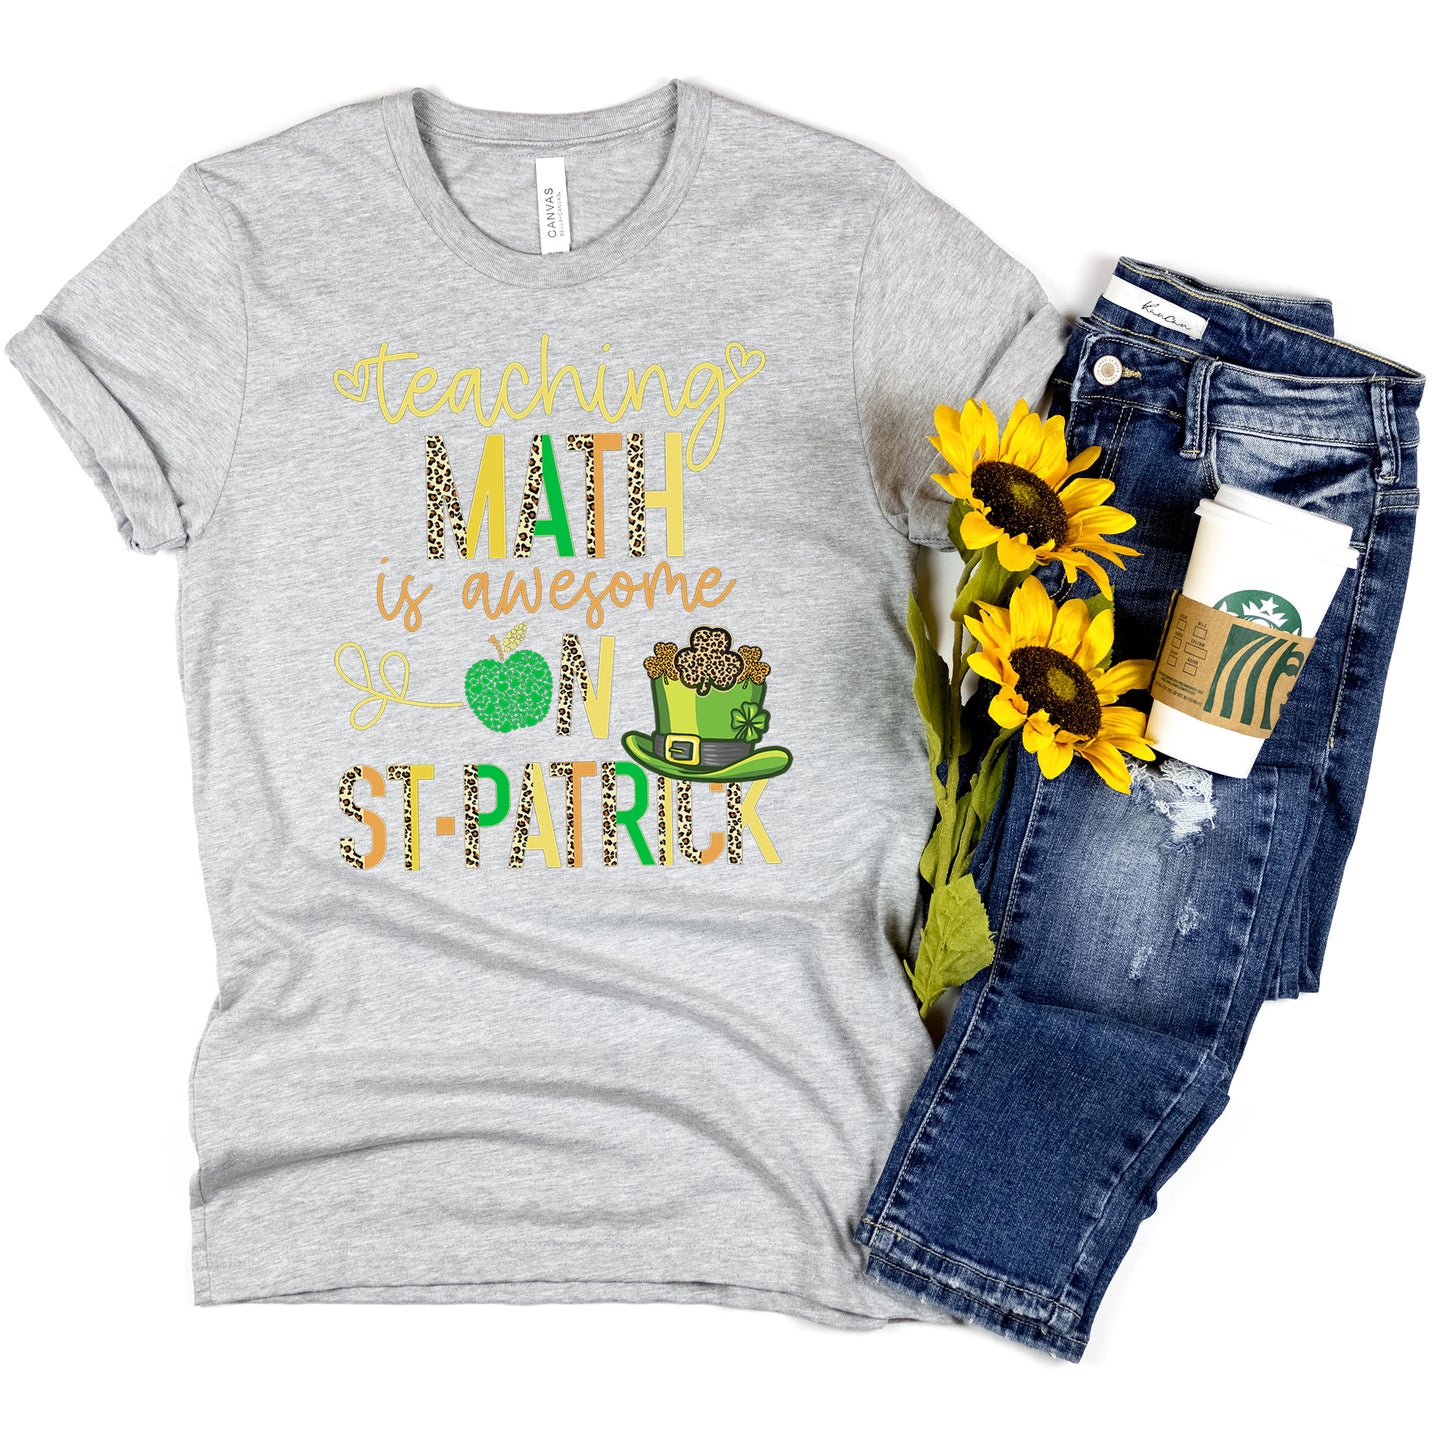 Teaching Math Teacher St Patrick's Day T-Shirt